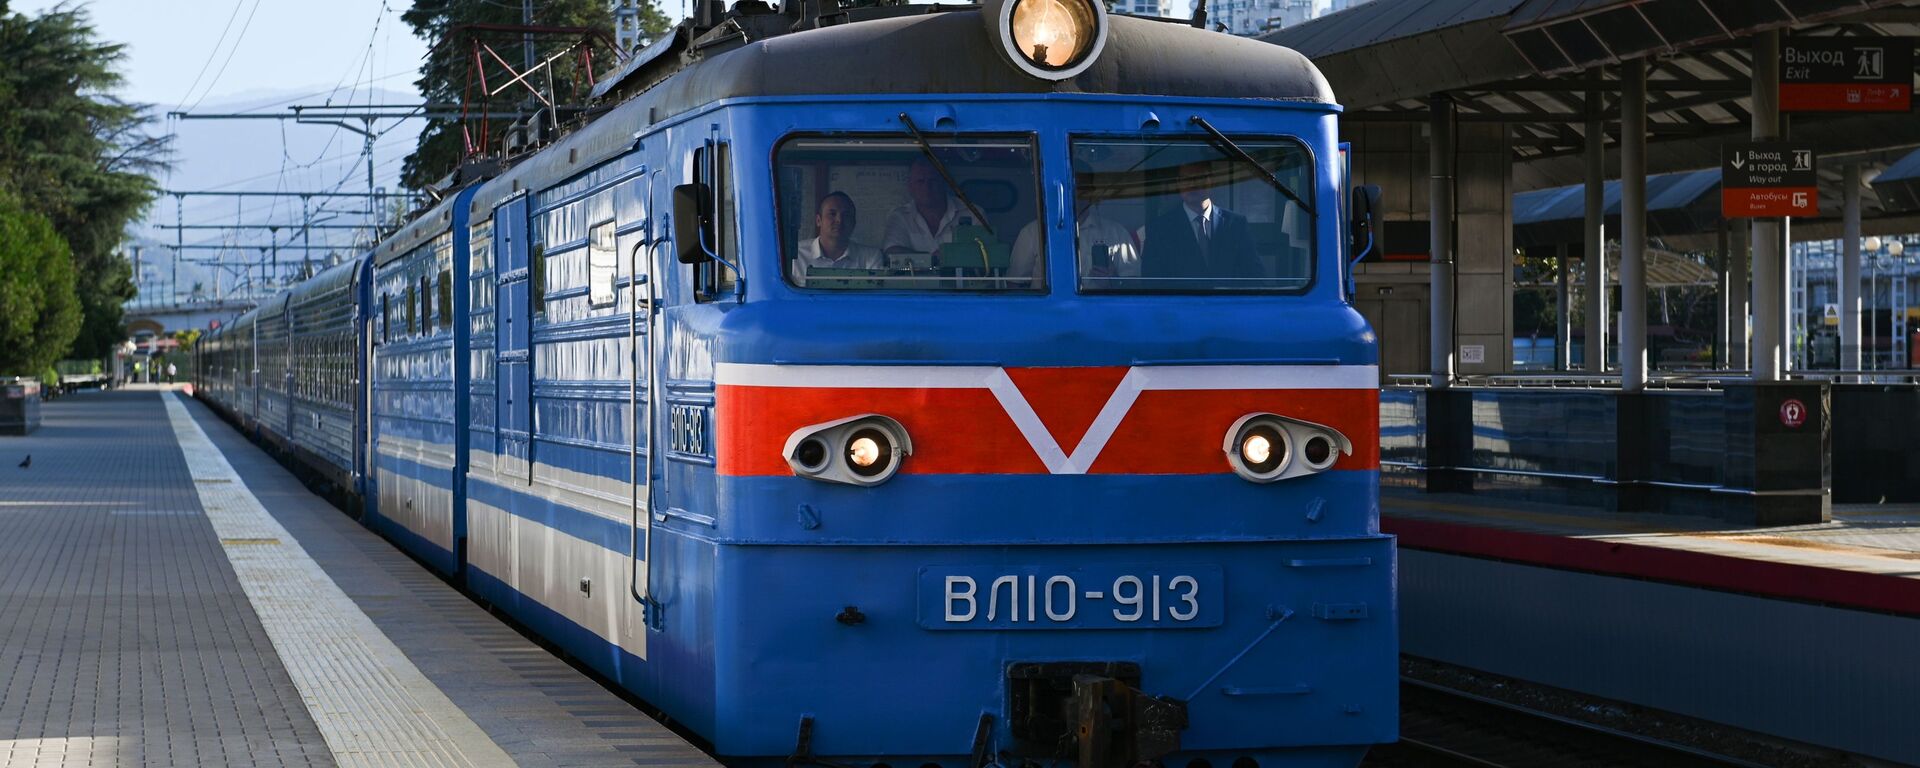 Новый туристический поезд Сочи - Sputnik Абхазия, 1920, 27.11.2021